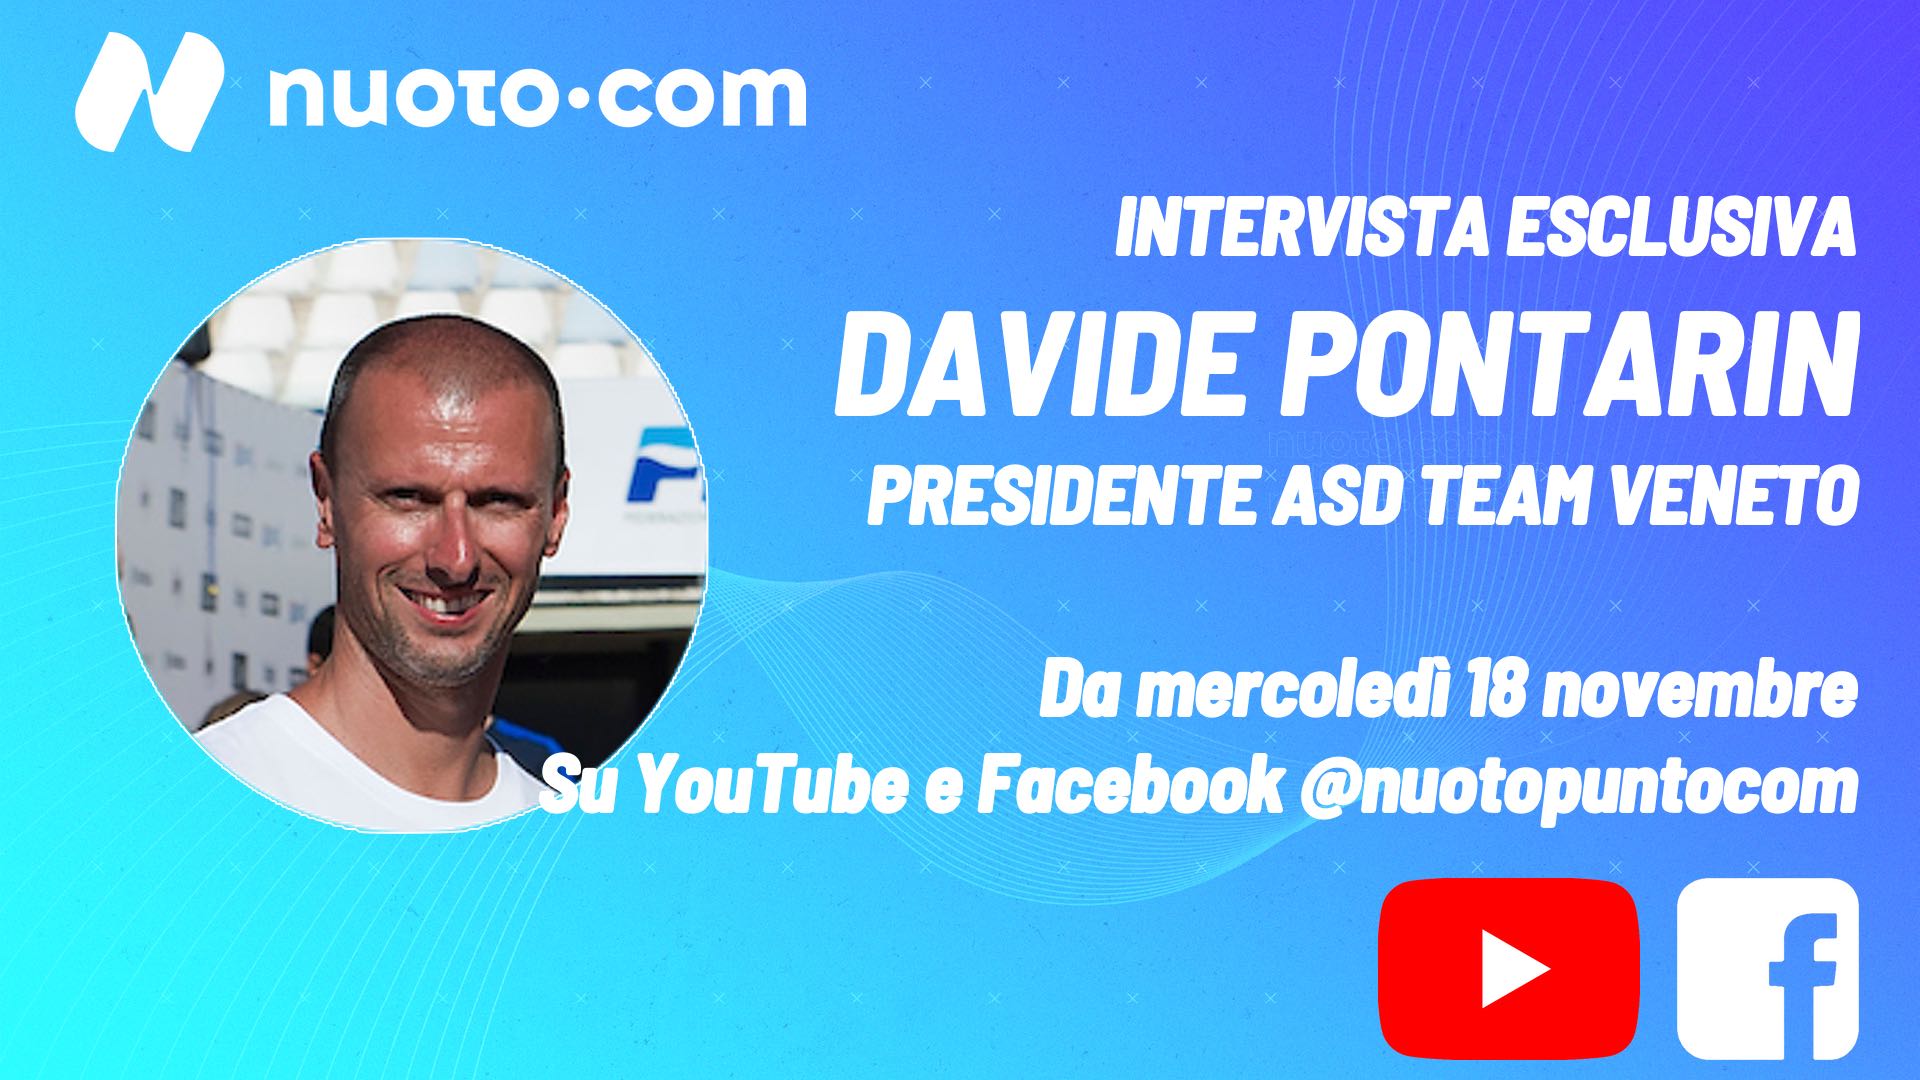 “Come allenatore sono ottimista, come gestore preoccupato”: intervista esclusiva con Davide Pontarin